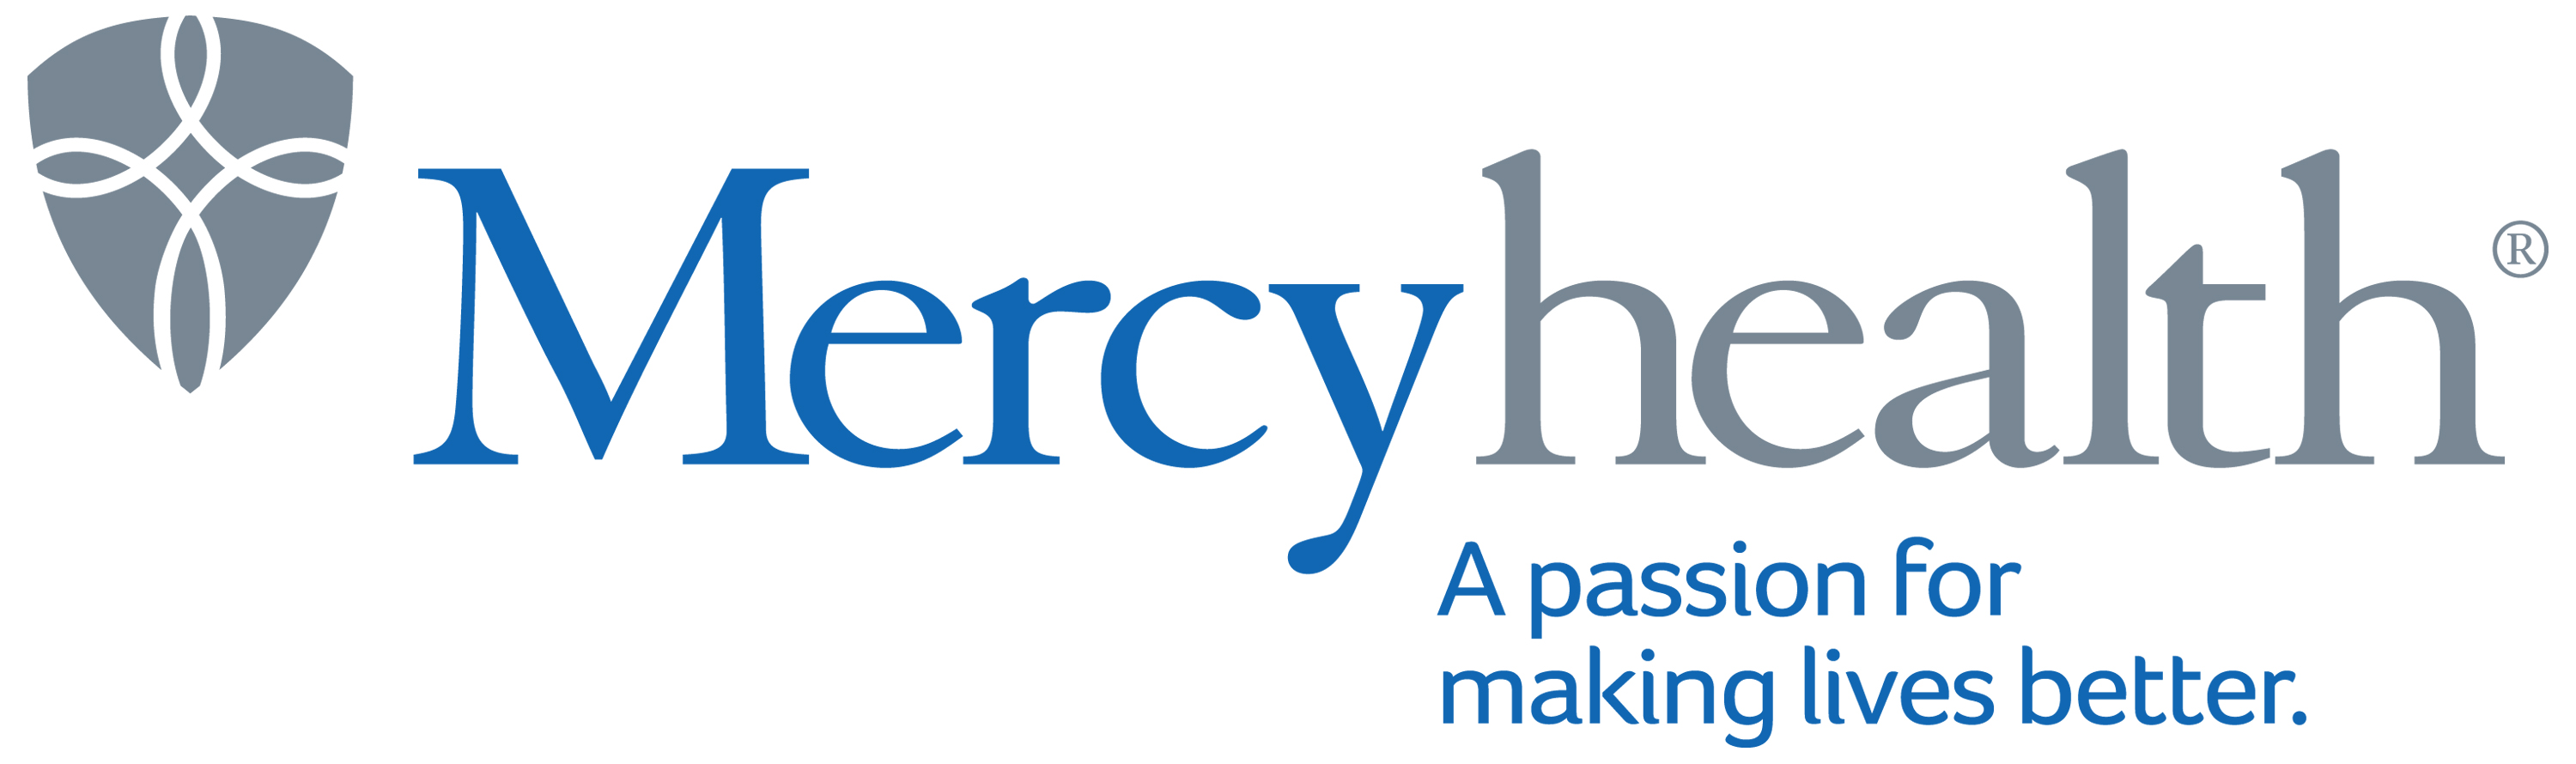 Mercyhealth logo.